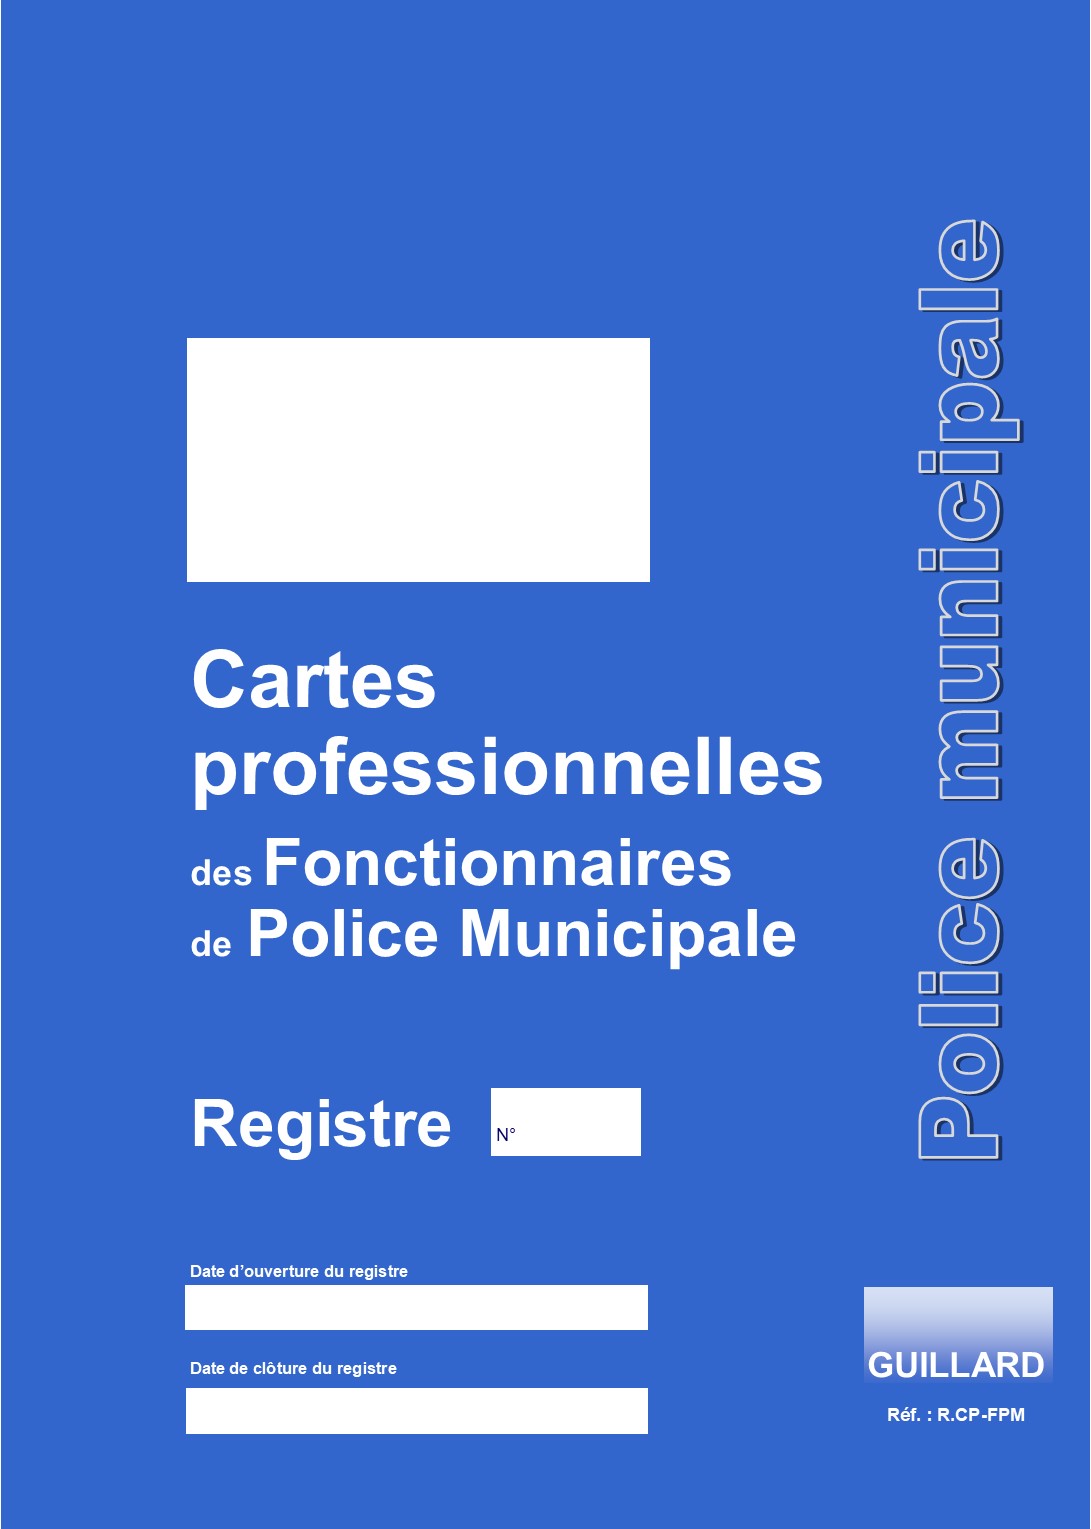 -- POLICE MUNICIPALE -- Registre des CARTES PROFESSIONNELLES des FONCTIONNAIRES DE POLICE MUNICIPALE  - R.CP-FPM